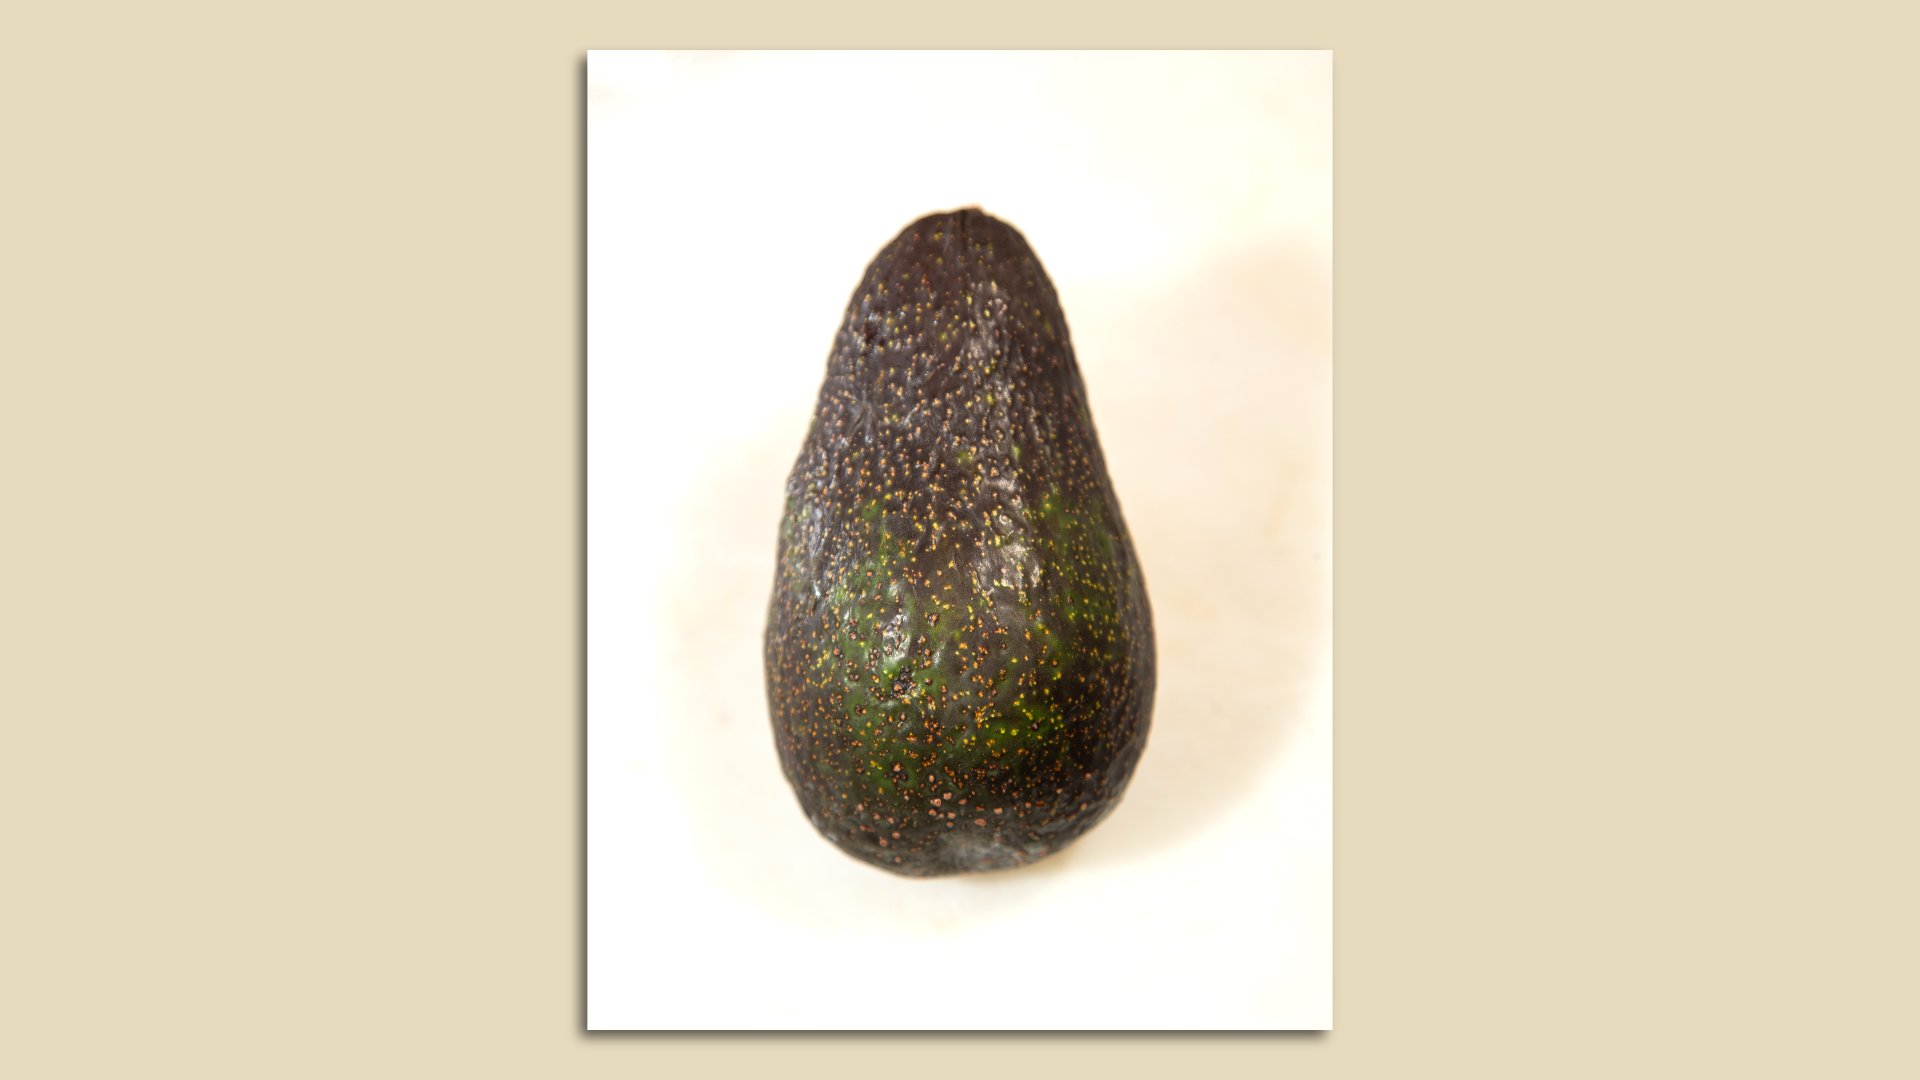 A single avocado -- the Luna.